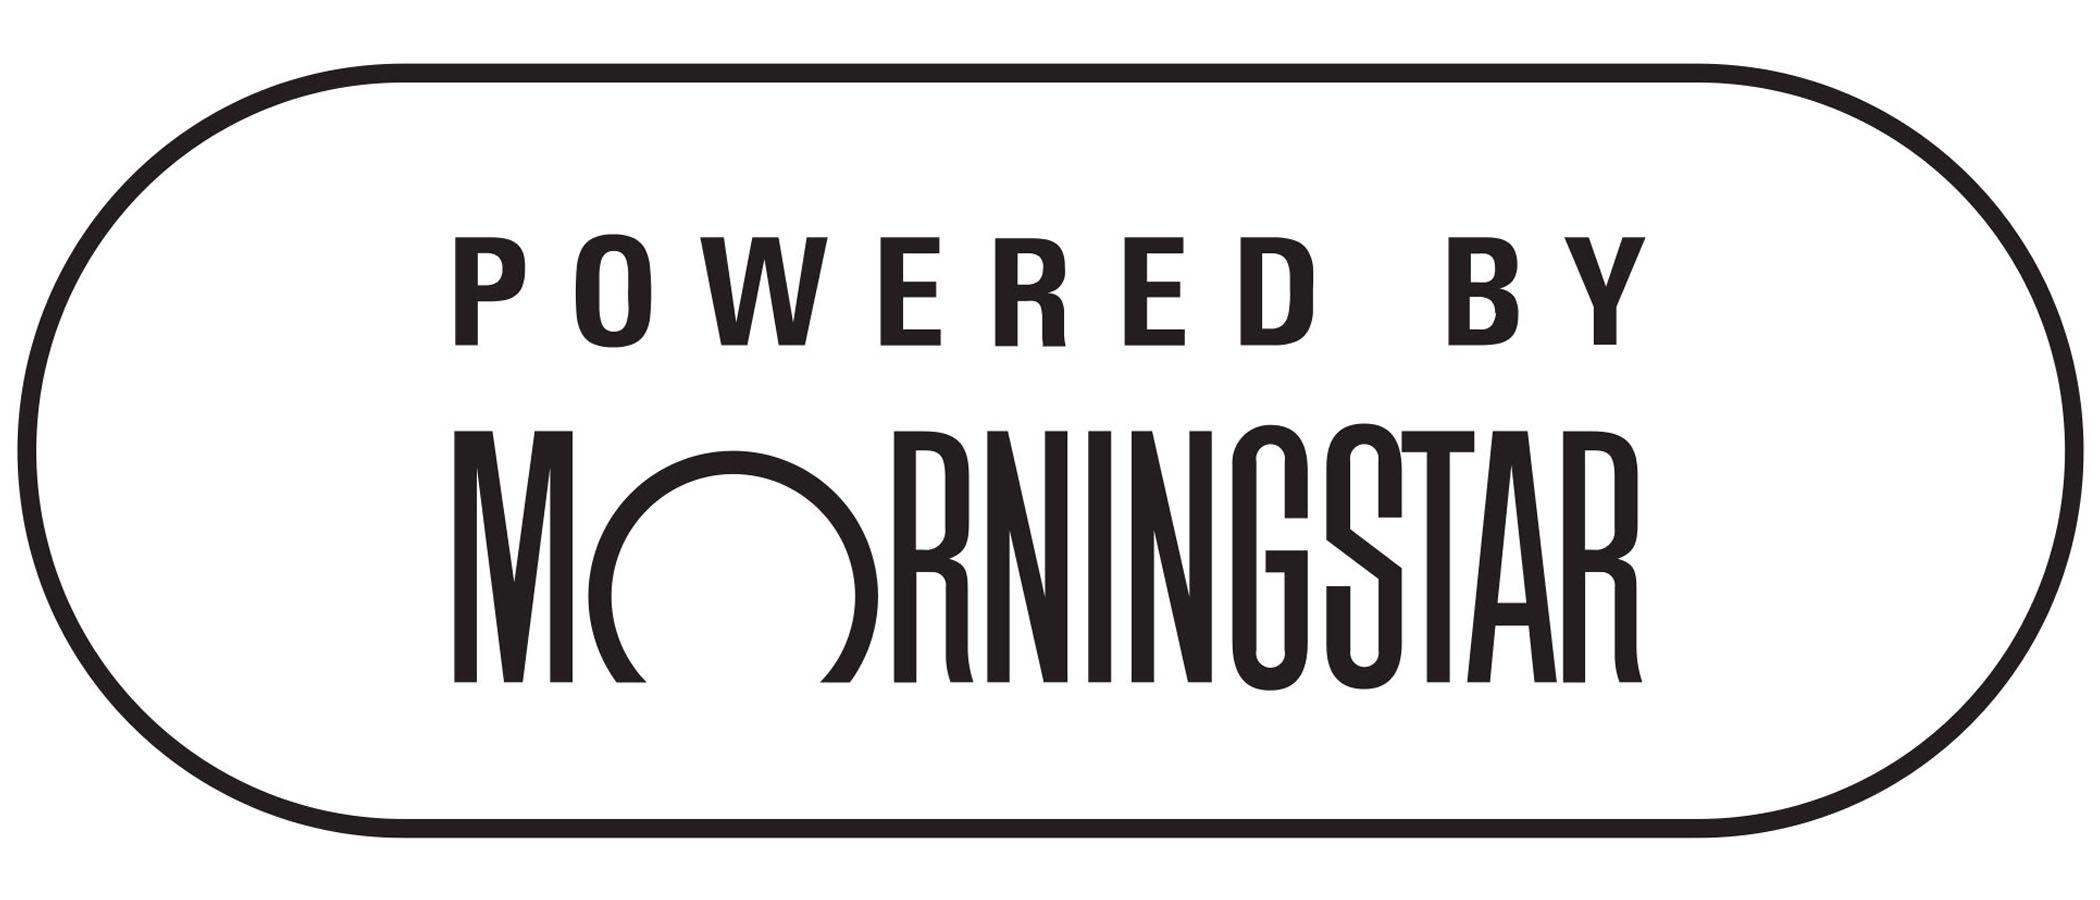 Morningstar Logo - Powered by Morningstar logo white background - Milford Asset